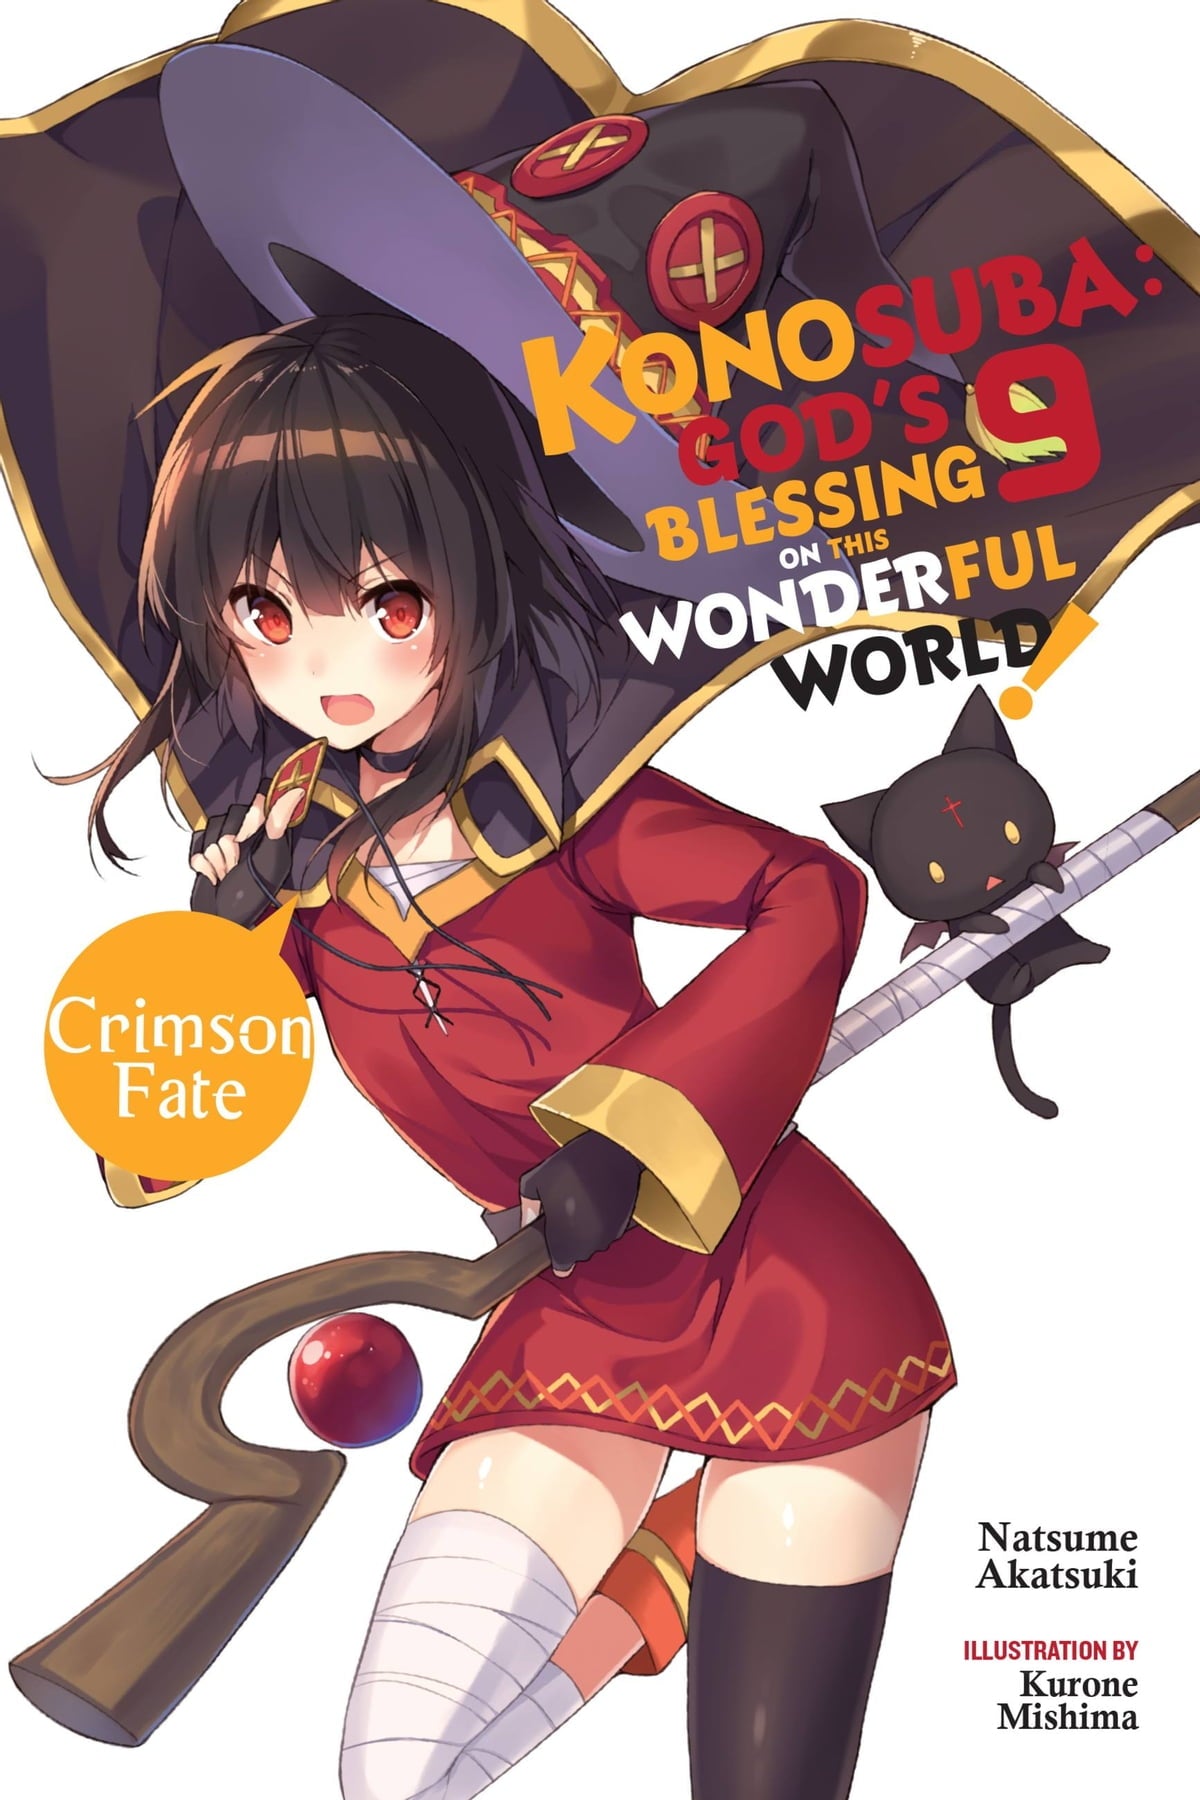 Konosuba: God's Blessing on This Wonderful World! Vol. 09 (Light Novel): Crimson Fate